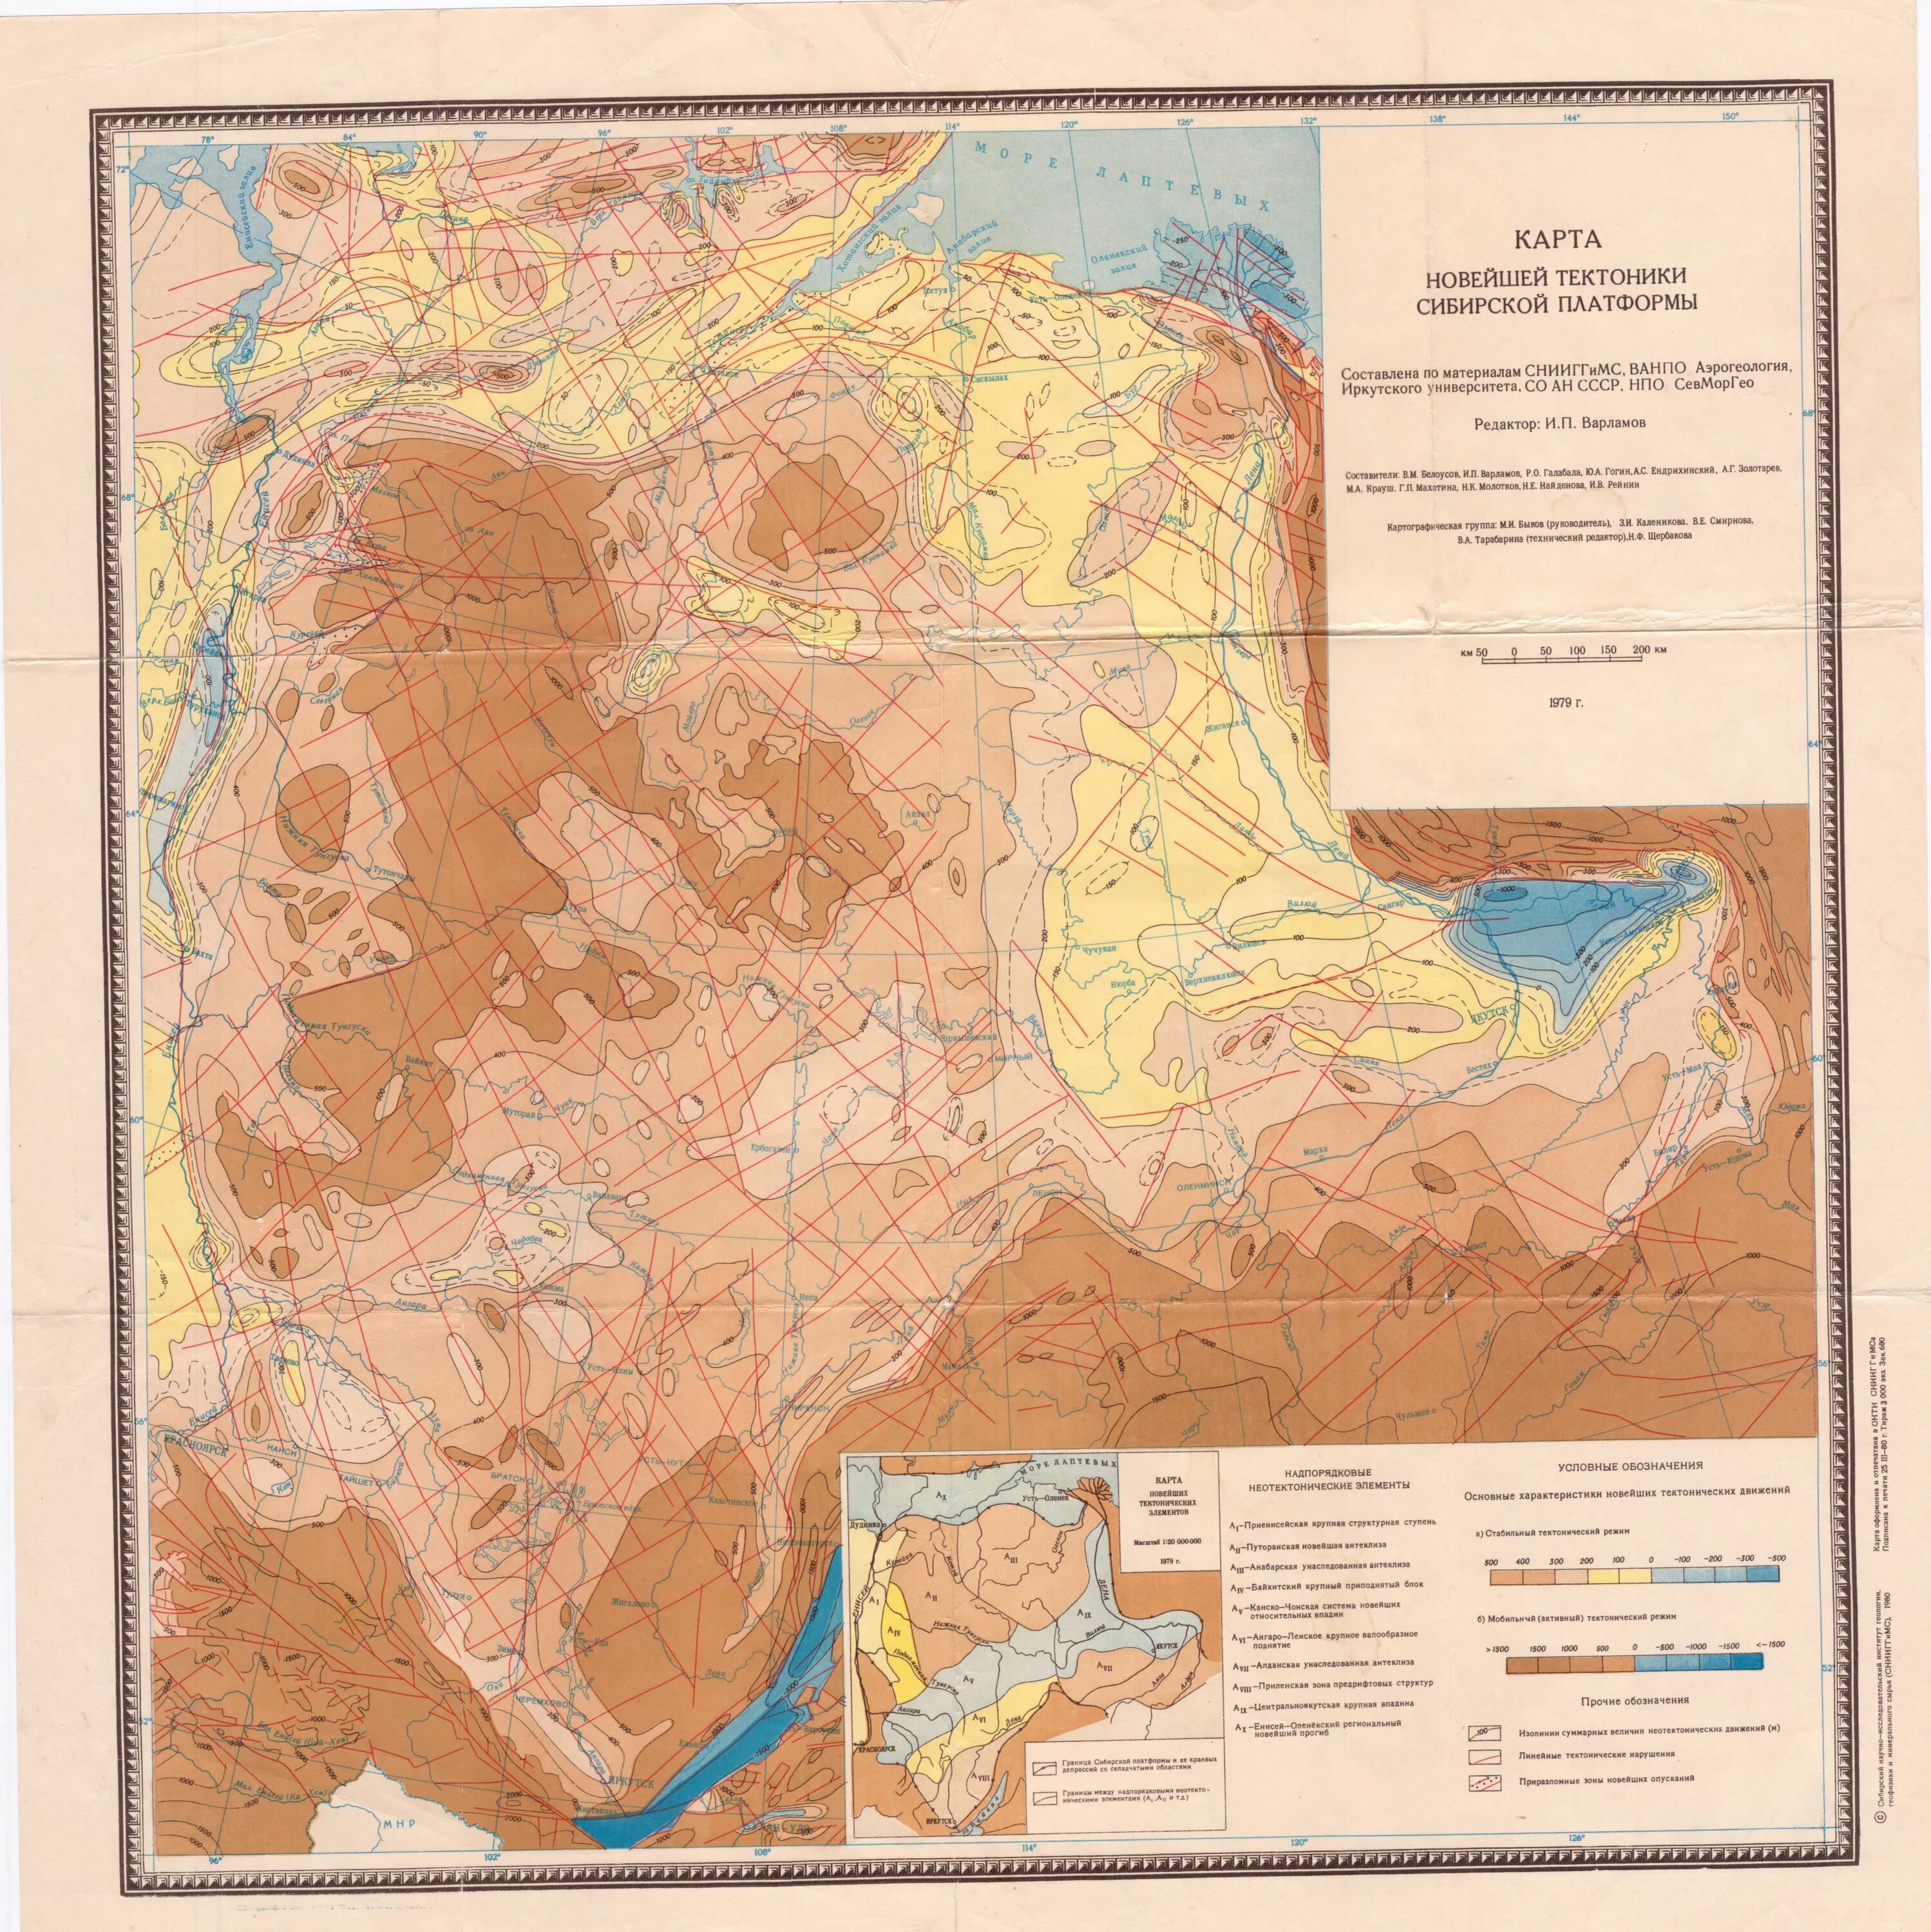 Геологическое восточной сибири. Карта новейшей тектоники Западно-сибирской равнины масштаб 1:2 500 000. Геологическая карта сибирской платформы. Геологическая карта Восточно-сибирской платформы. Тектоническое районирование сибирской платформы.